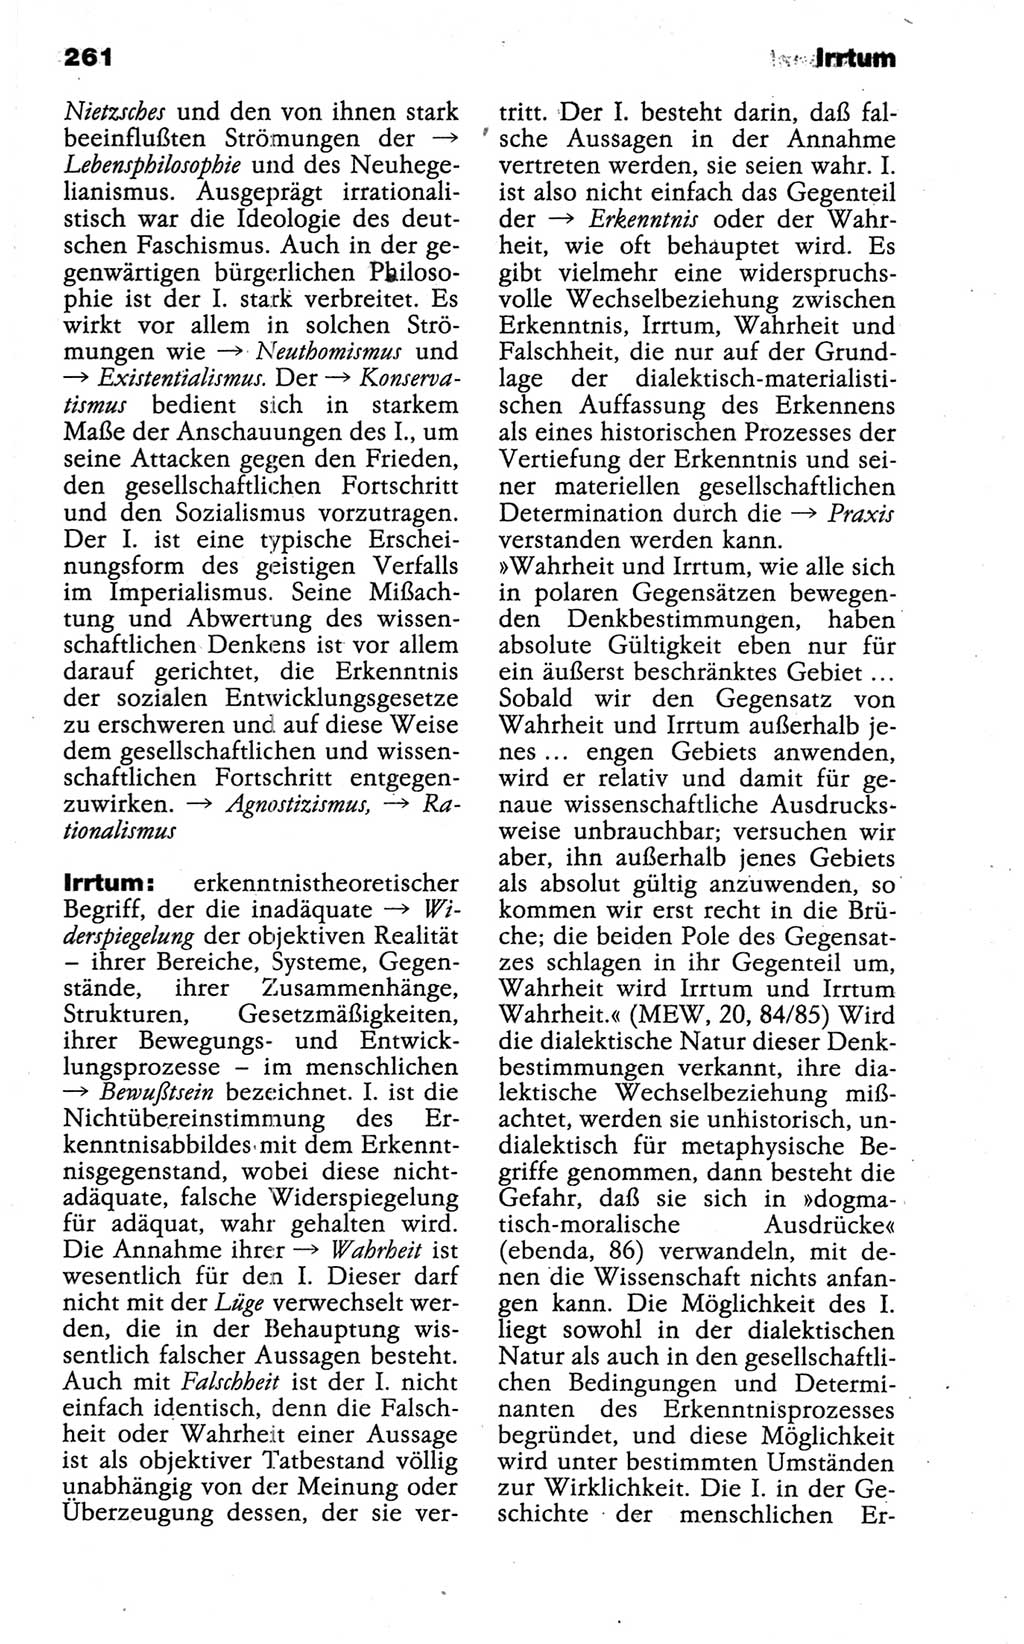 Wörterbuch der marxistisch-leninistischen Philosophie [Deutsche Demokratische Republik (DDR)] 1986, Seite 261 (Wb. ML Phil. DDR 1986, S. 261)